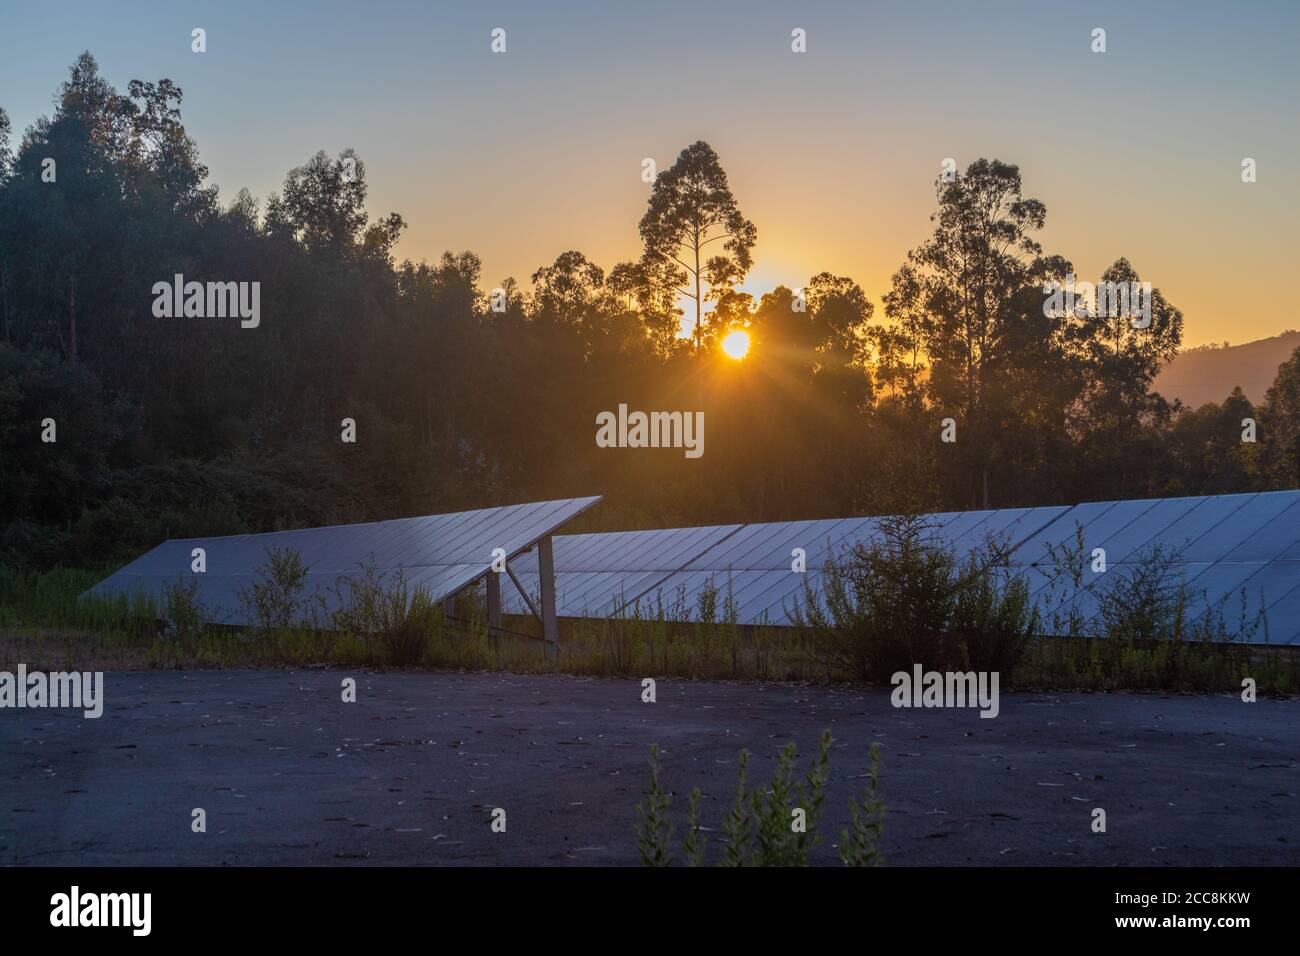 Groupe de panneaux solaires pendant le coucher du soleil, à l'heure d'or Banque D'Images